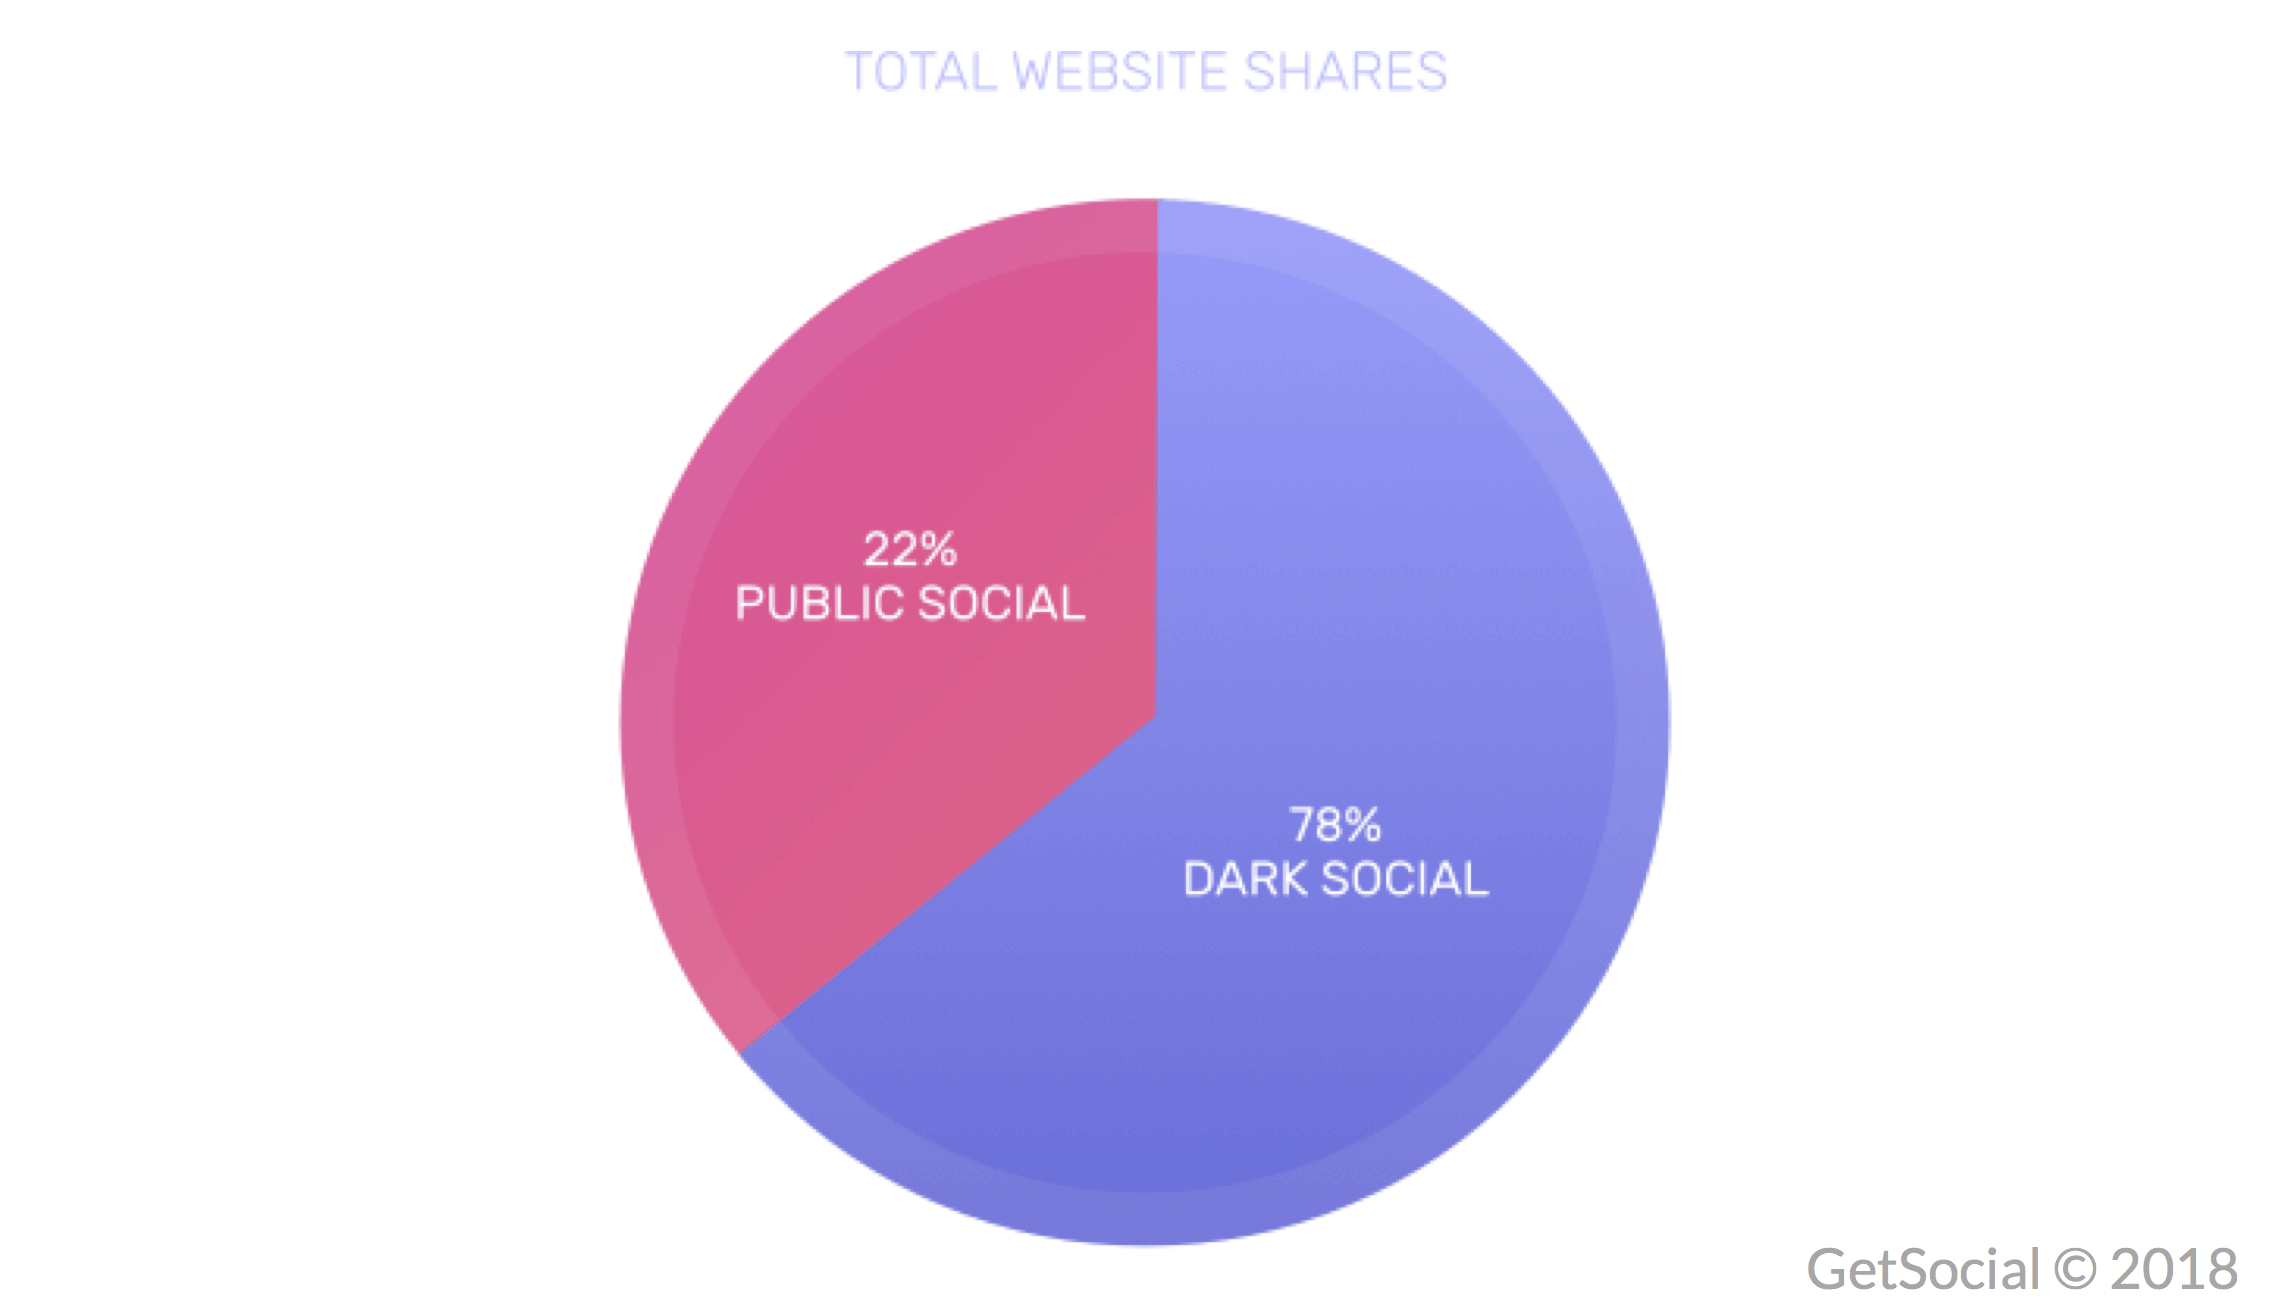 dark social shares